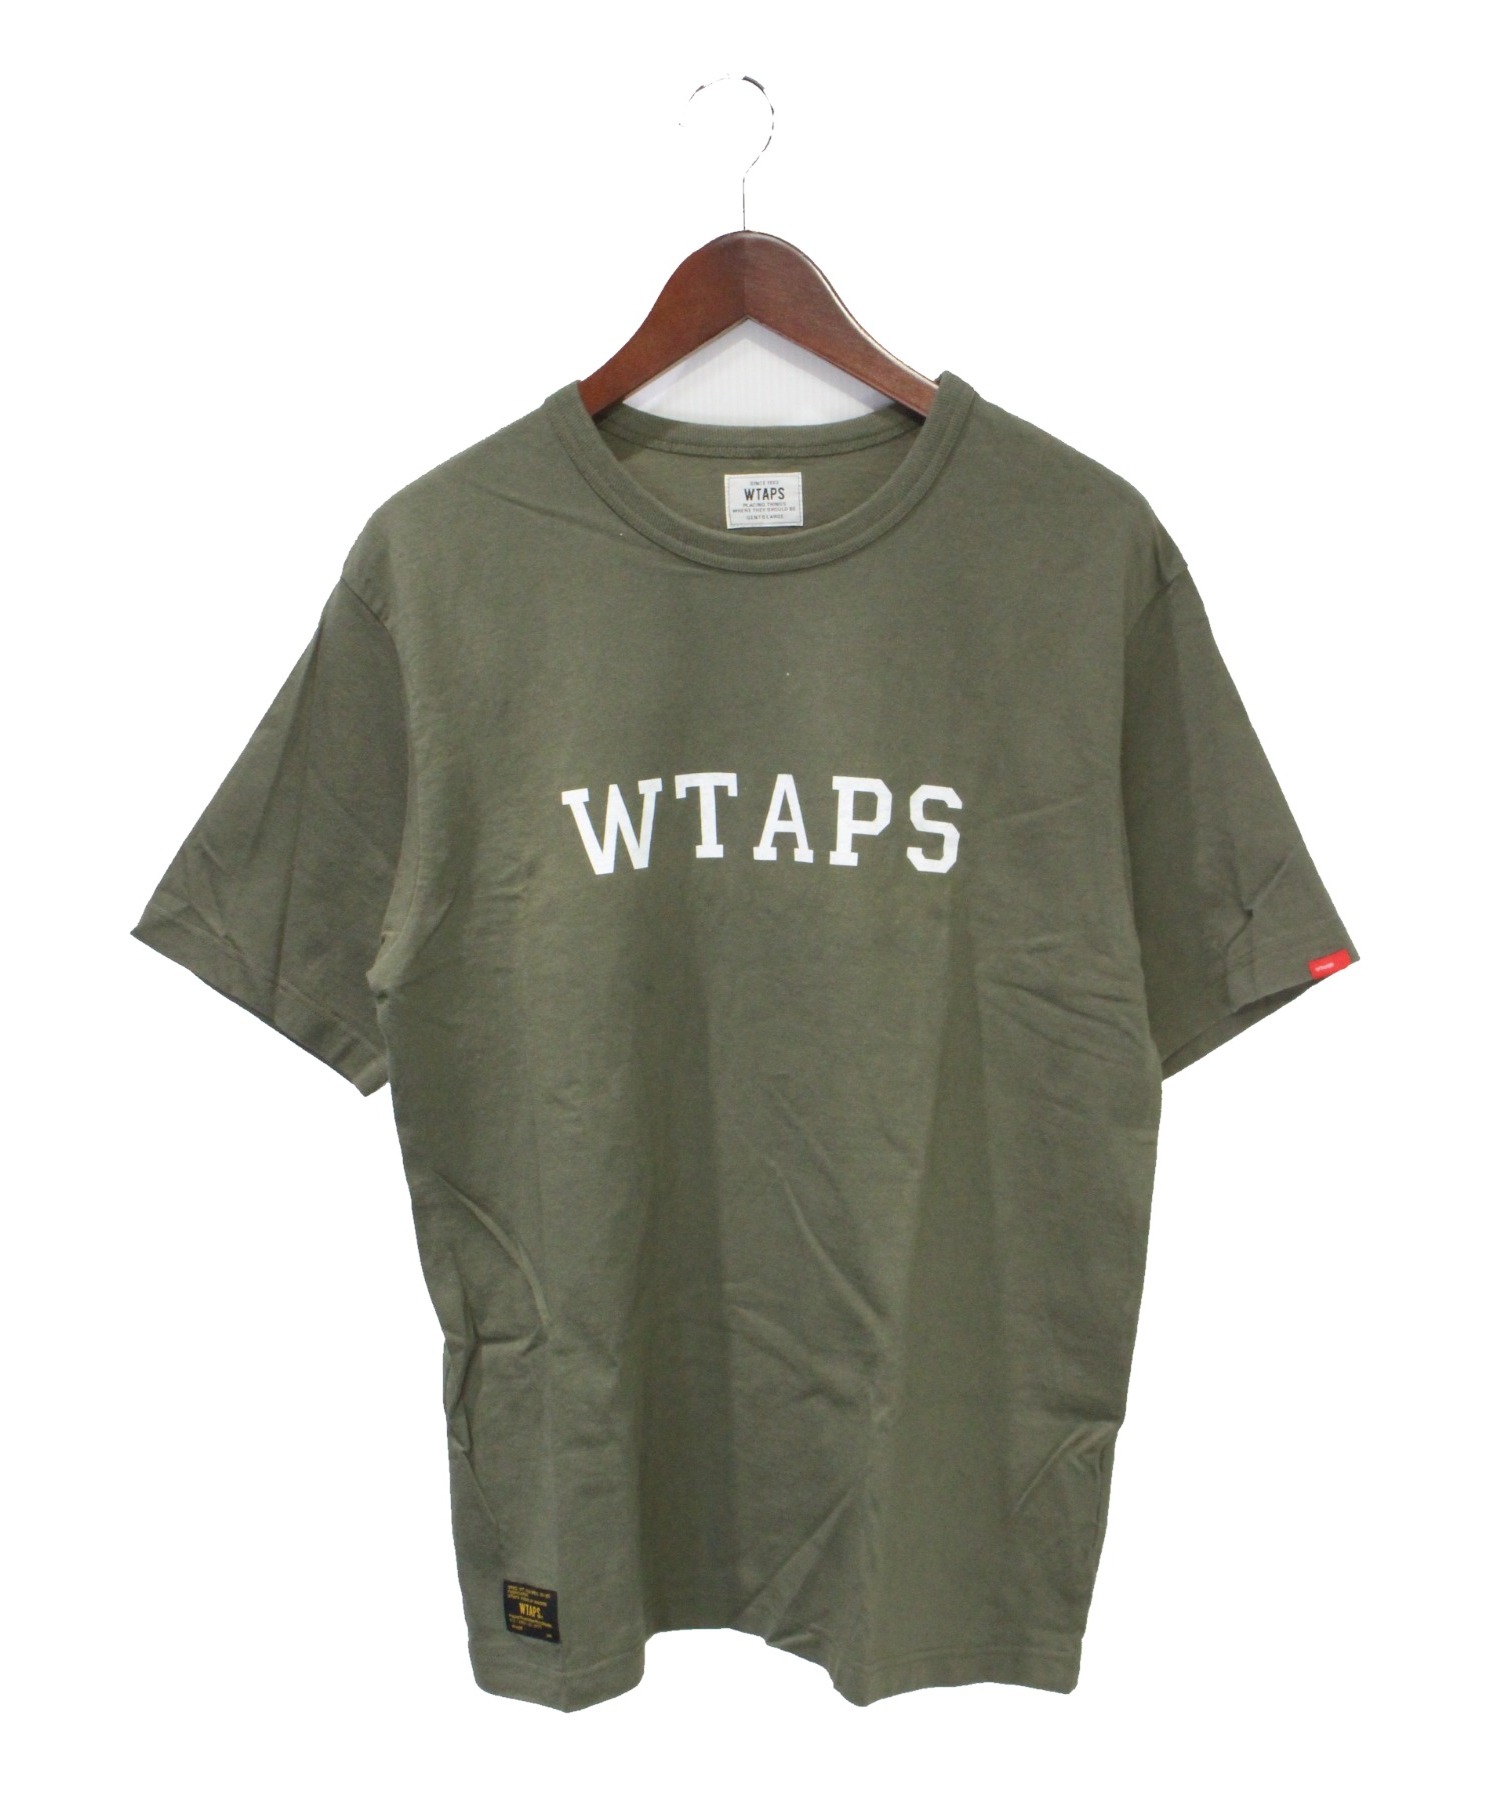 WTAPS ダブルタップス ロゴプリント Tシャツ 厚手素材 Sサイズ カーキ